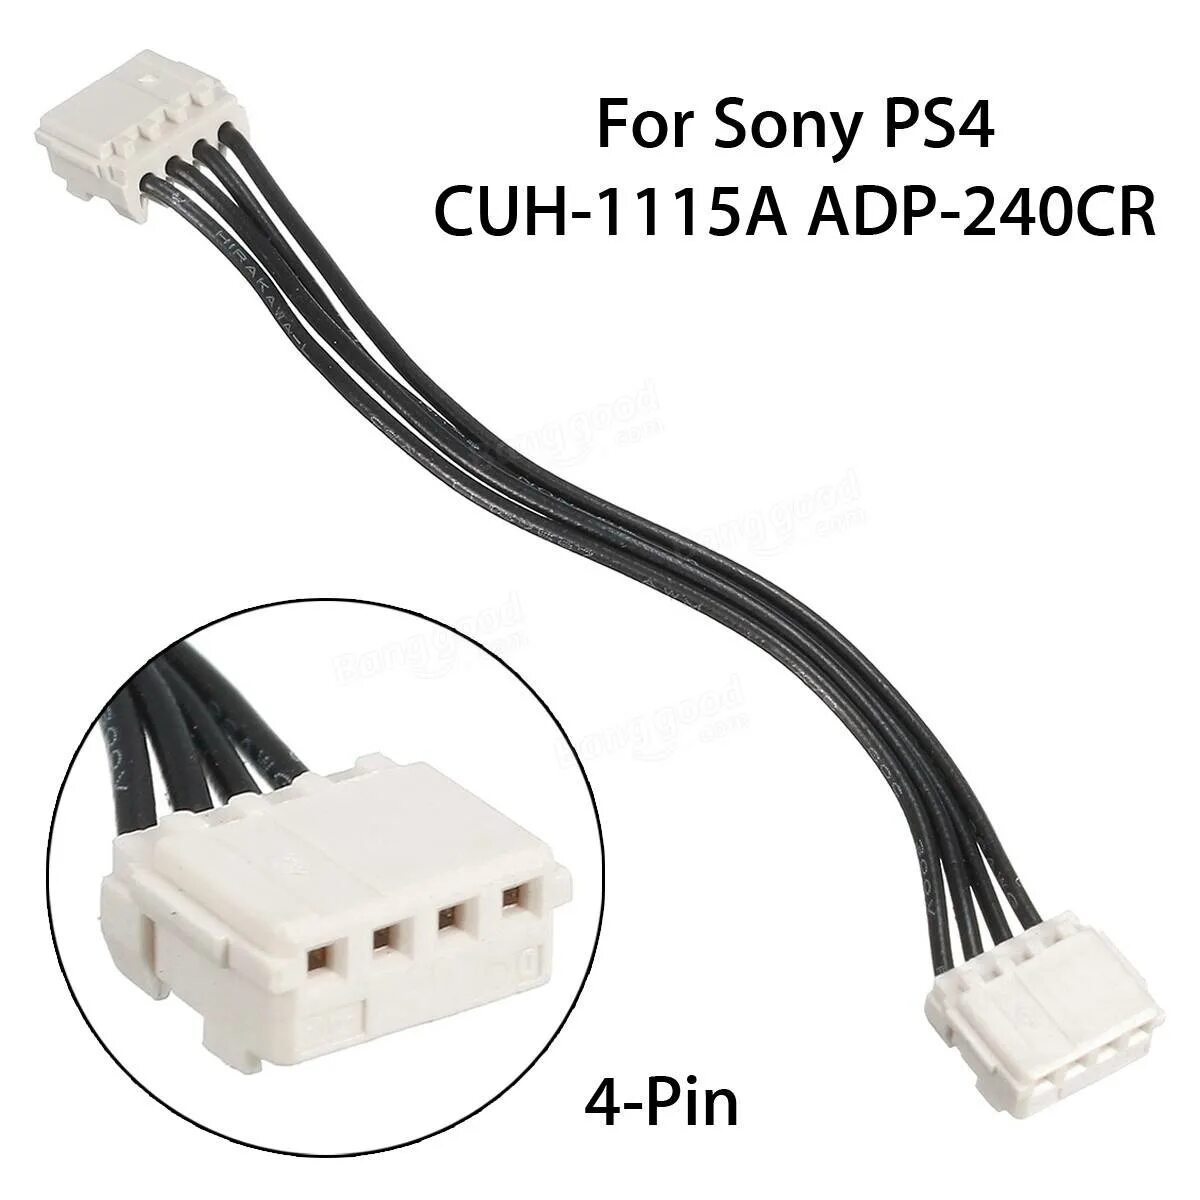 Провод питания PS 1фат. Разъём блока питания ps4 Pro. Power Cable for Sony ps4 cuh1115a adp240cr sale - RC Toys & Hobbies. Блок питания ПС 4 4 Pin Cable. Кабель питания ps5